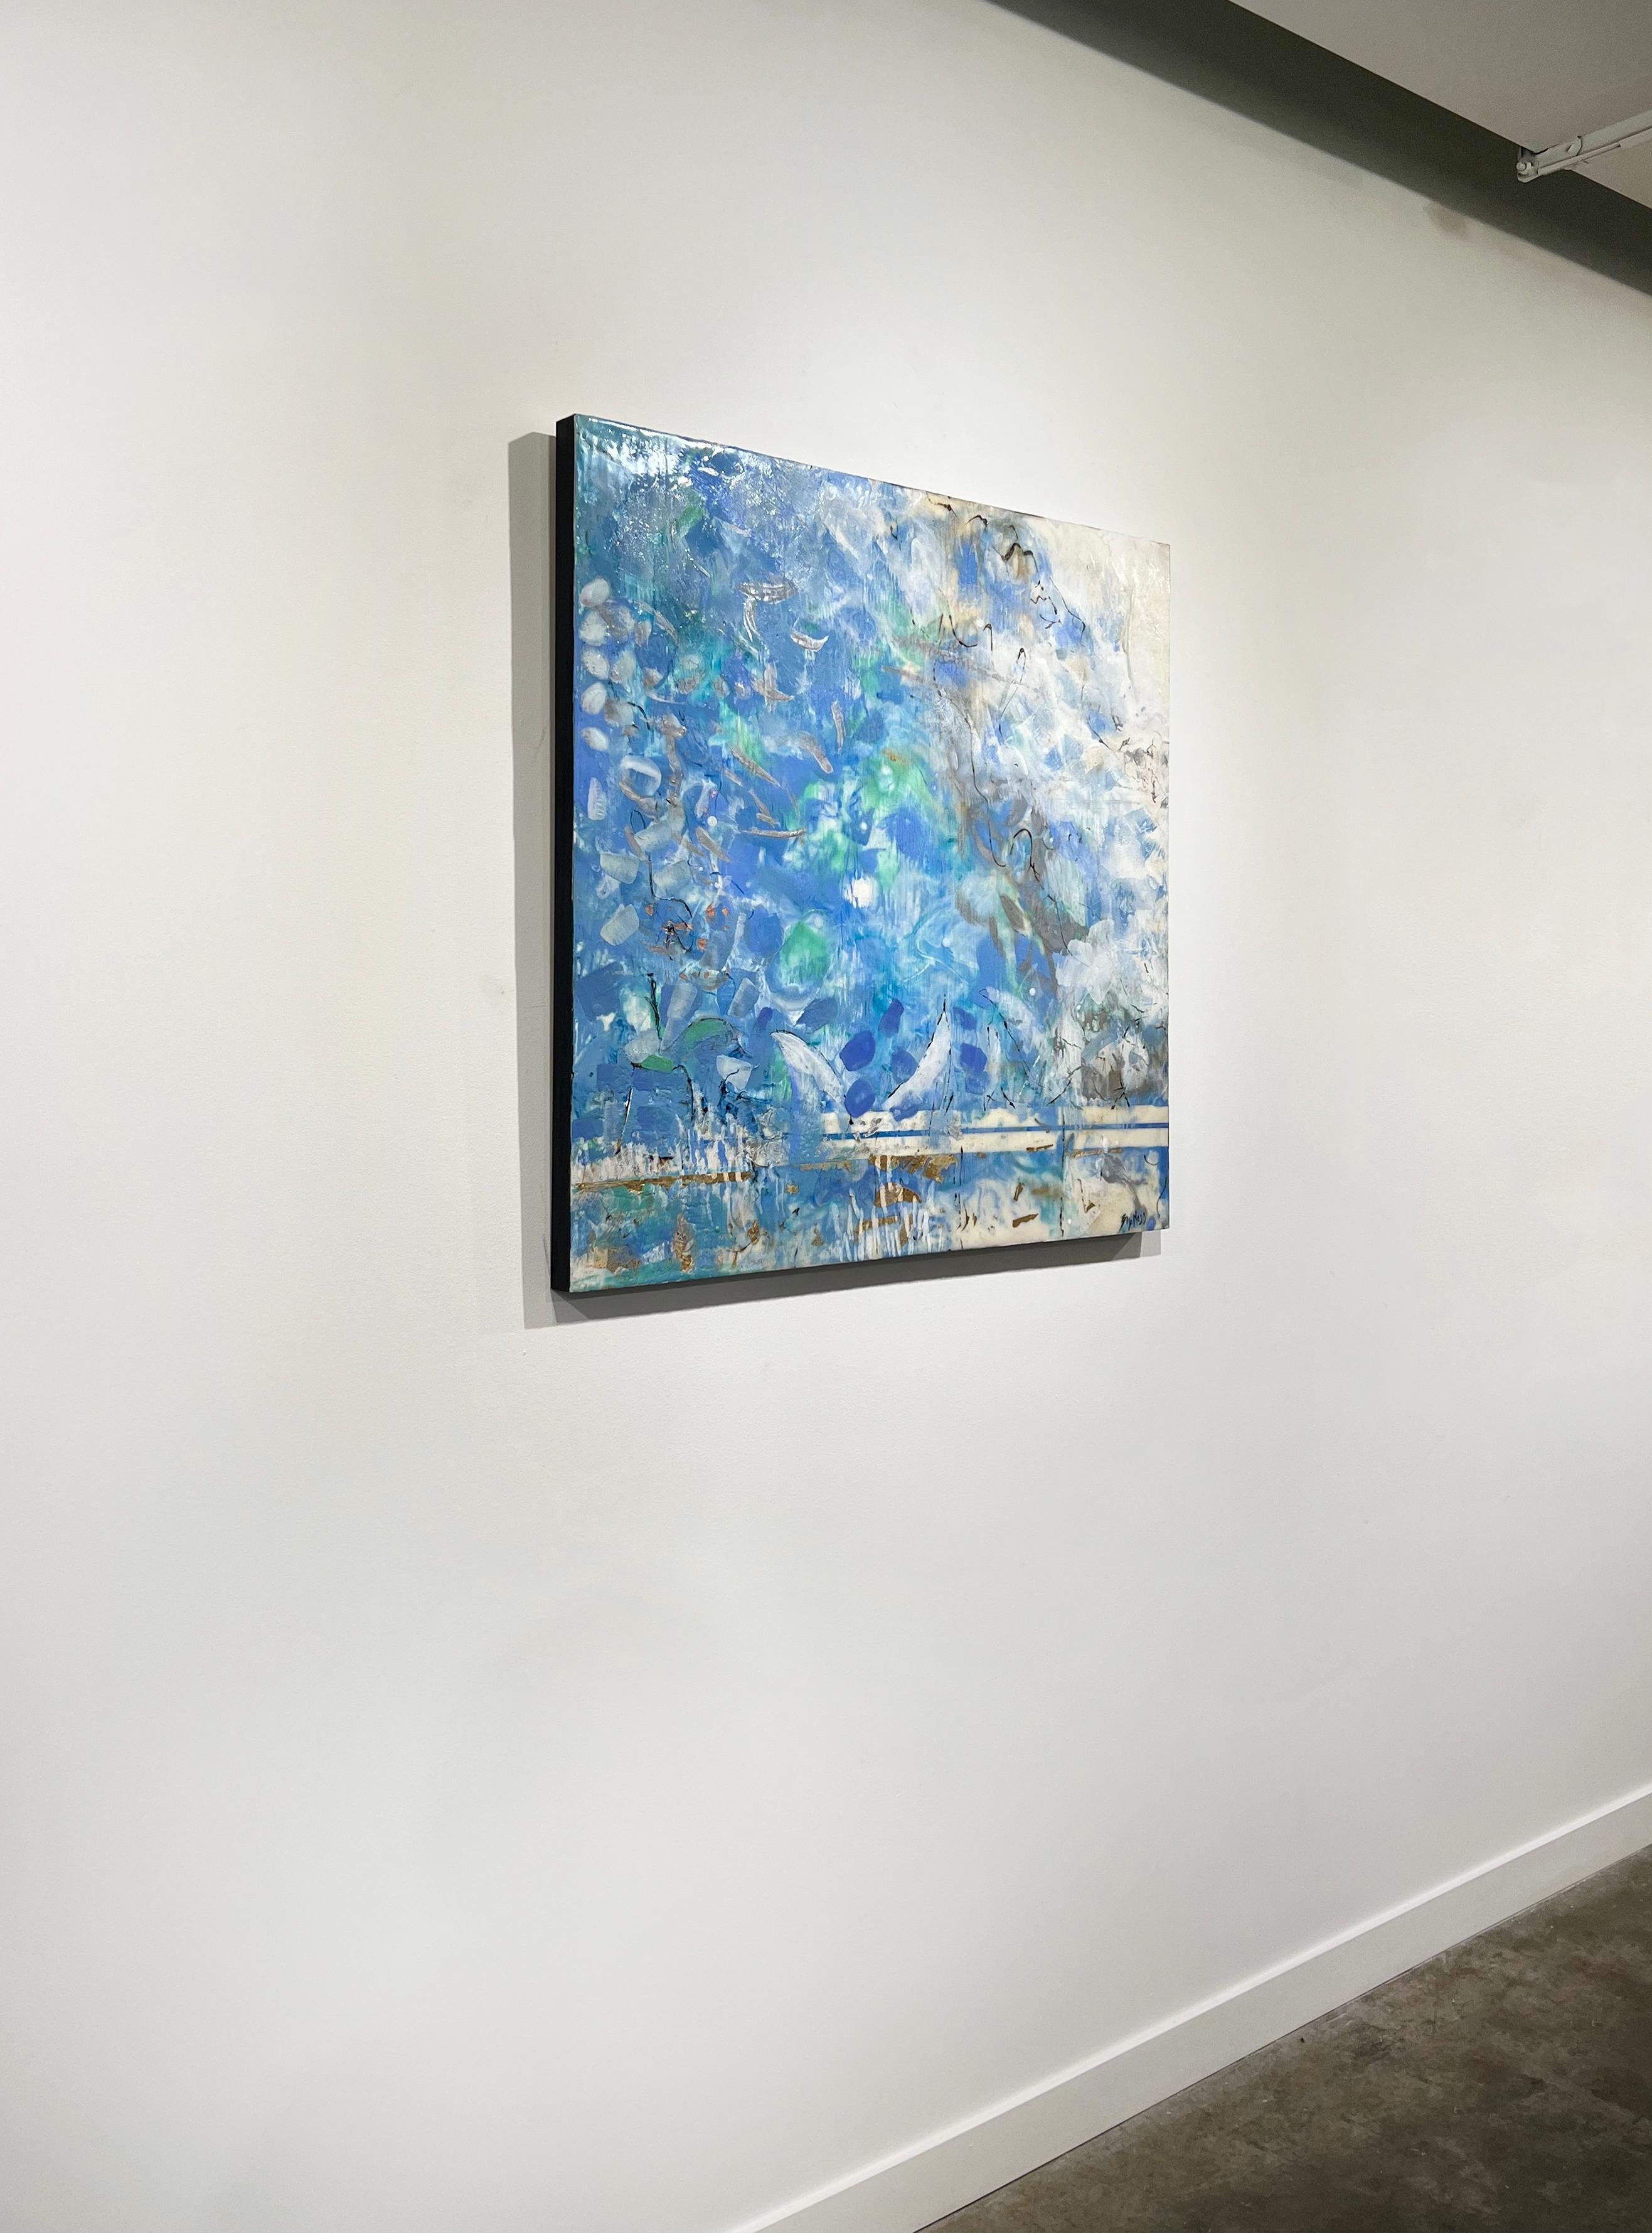 Dieses abstrakte florale Enkaustik-Gemälde der Künstlerin Linda Bigness zeichnet sich durch eine kühle blaue Farbpalette mit metallischen Blattgoldakzenten aus. Das Gemälde ist mit Enkaustik und Blattgold auf Karton gemalt und hat schwarz bemalte